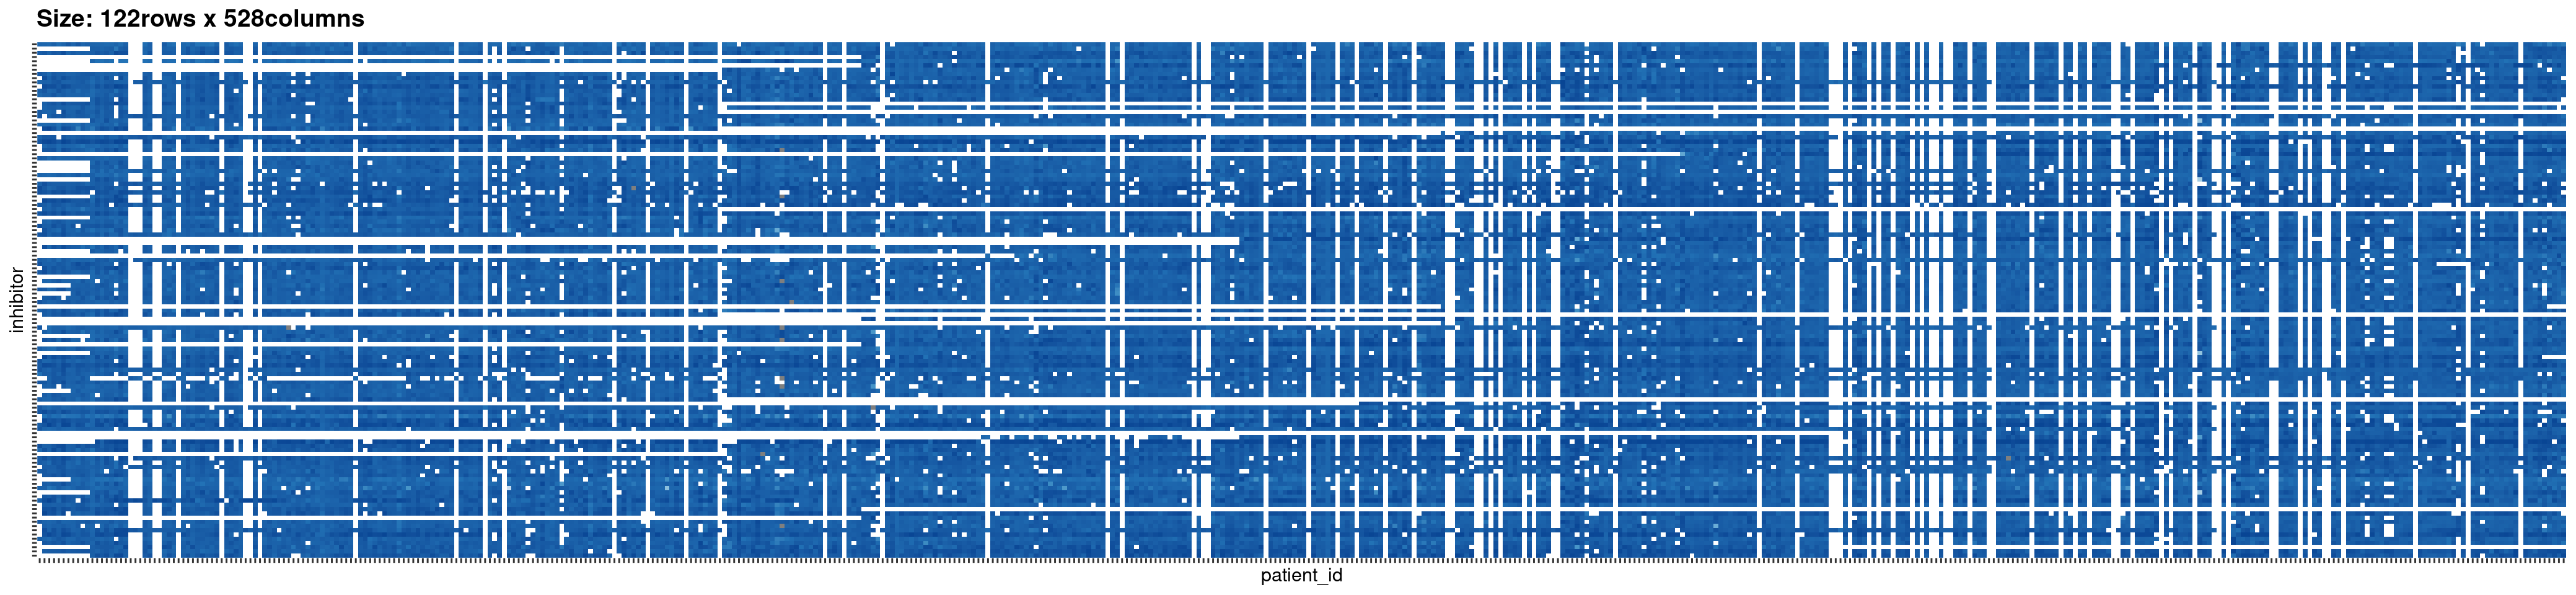 The beatAML dataset as an incidence matrix